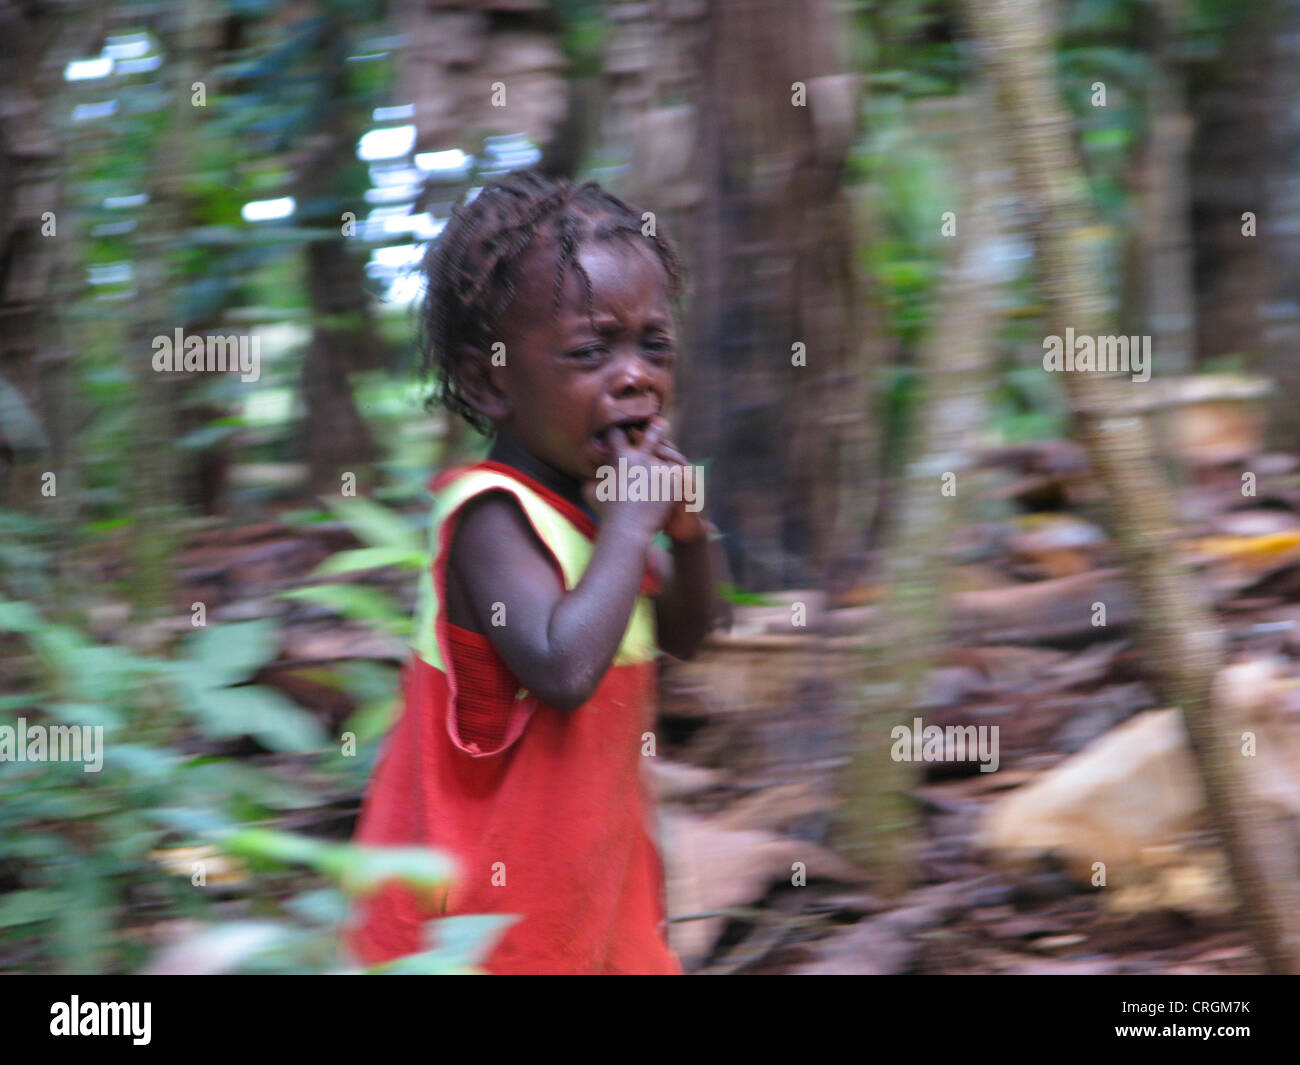 Niñito en zona rural, asustada, llorando y huyendo del fotógrafo, Haití, Grande Anse, Jeremie Foto de stock